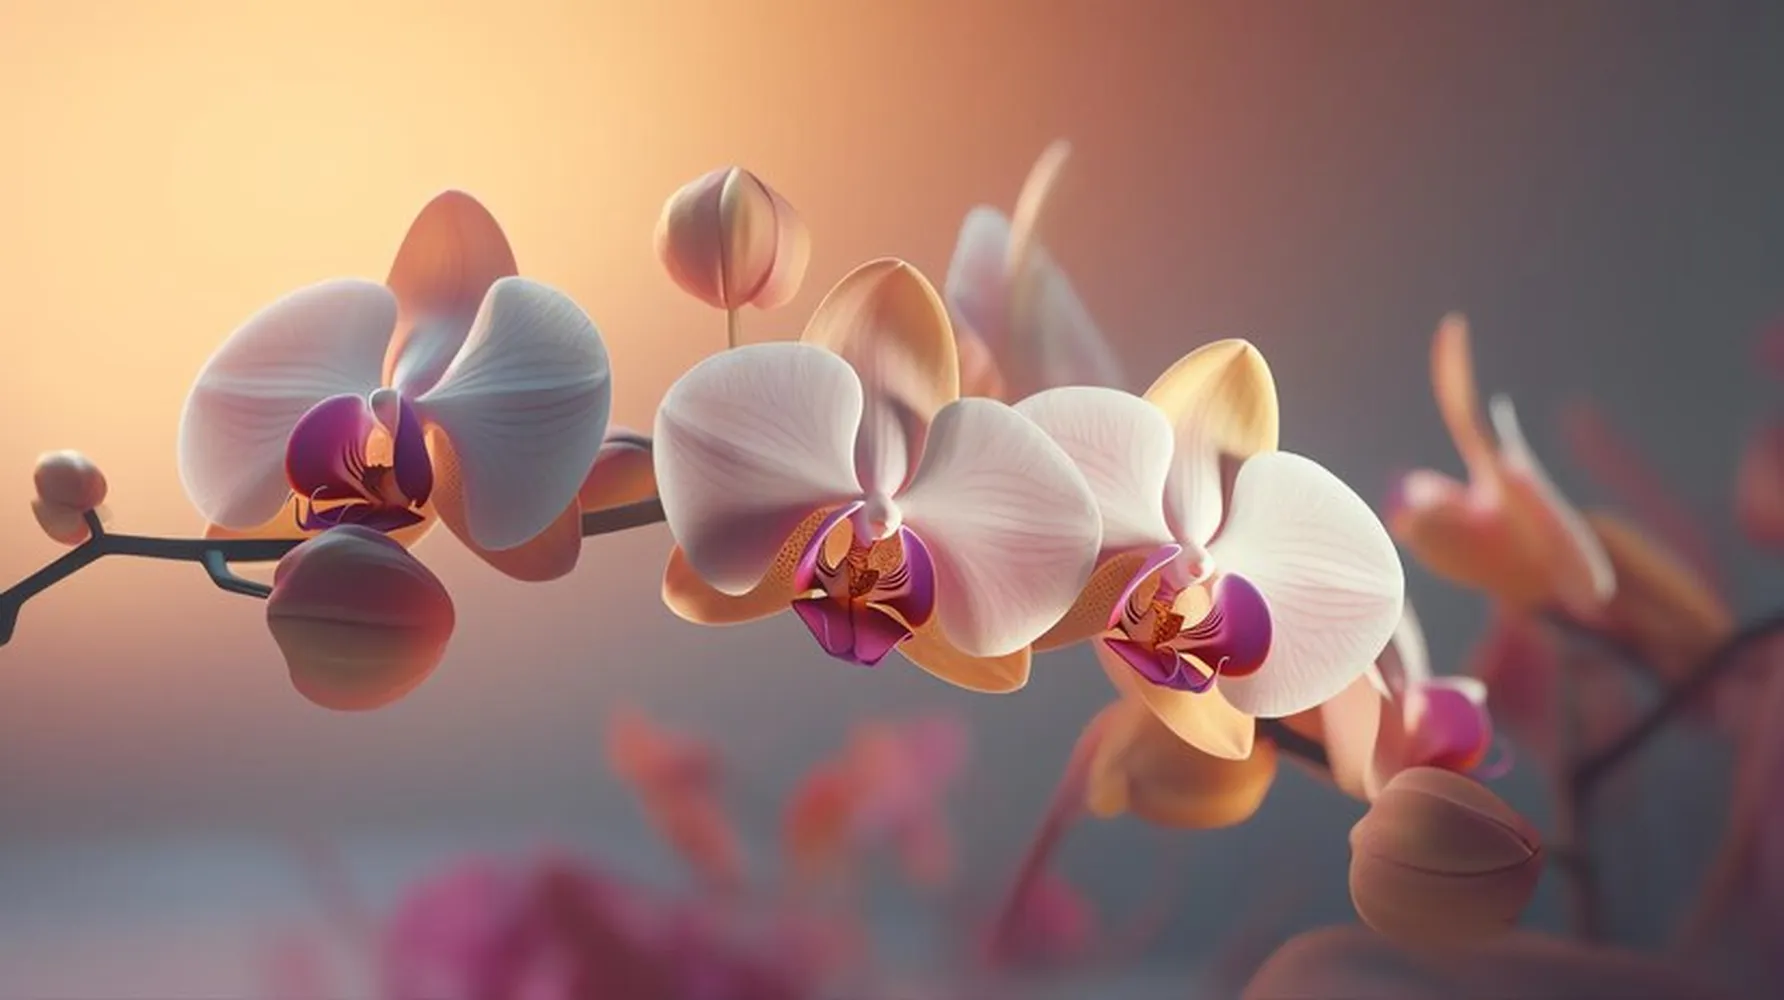 پوستر 3 بعدی طرح گل پاییز با رنگ جادویی